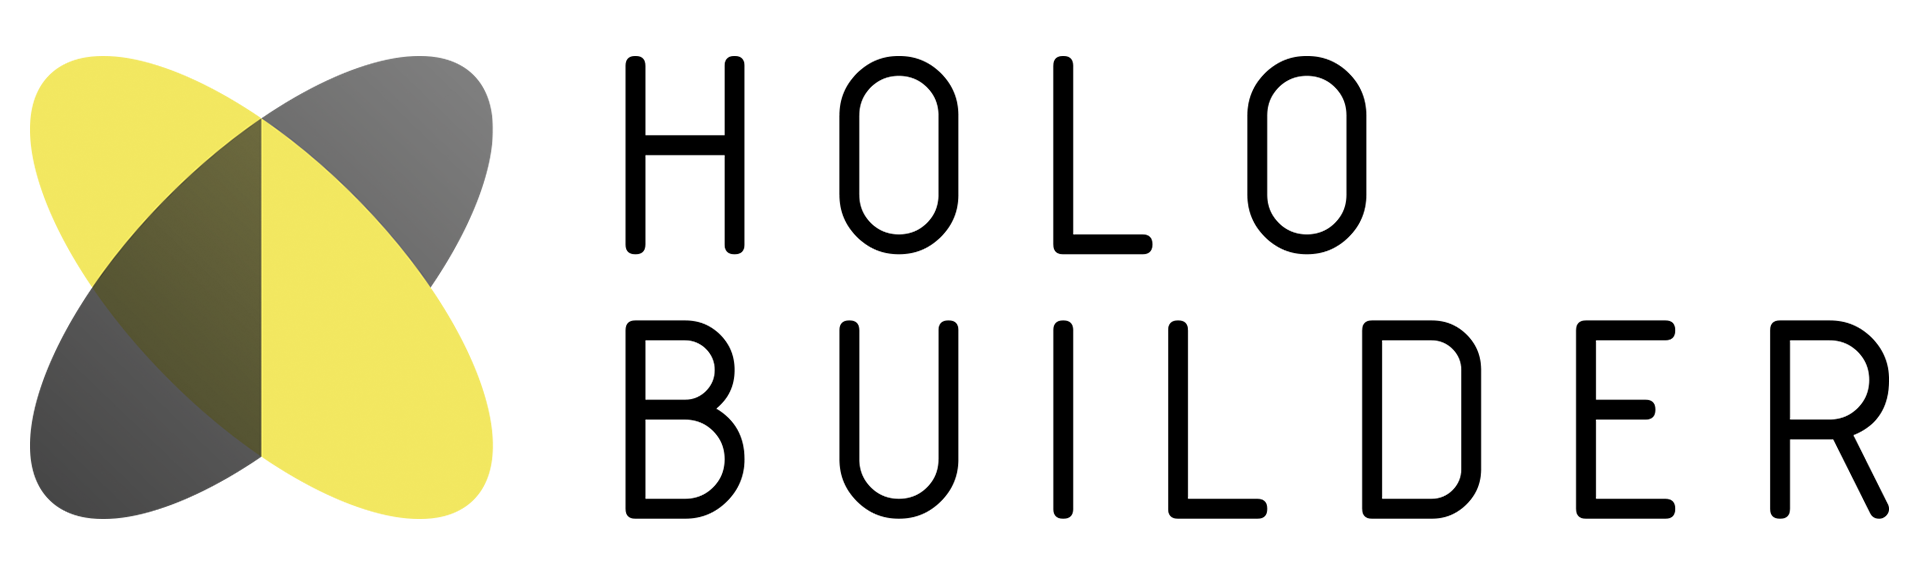 HoloBuilder_001